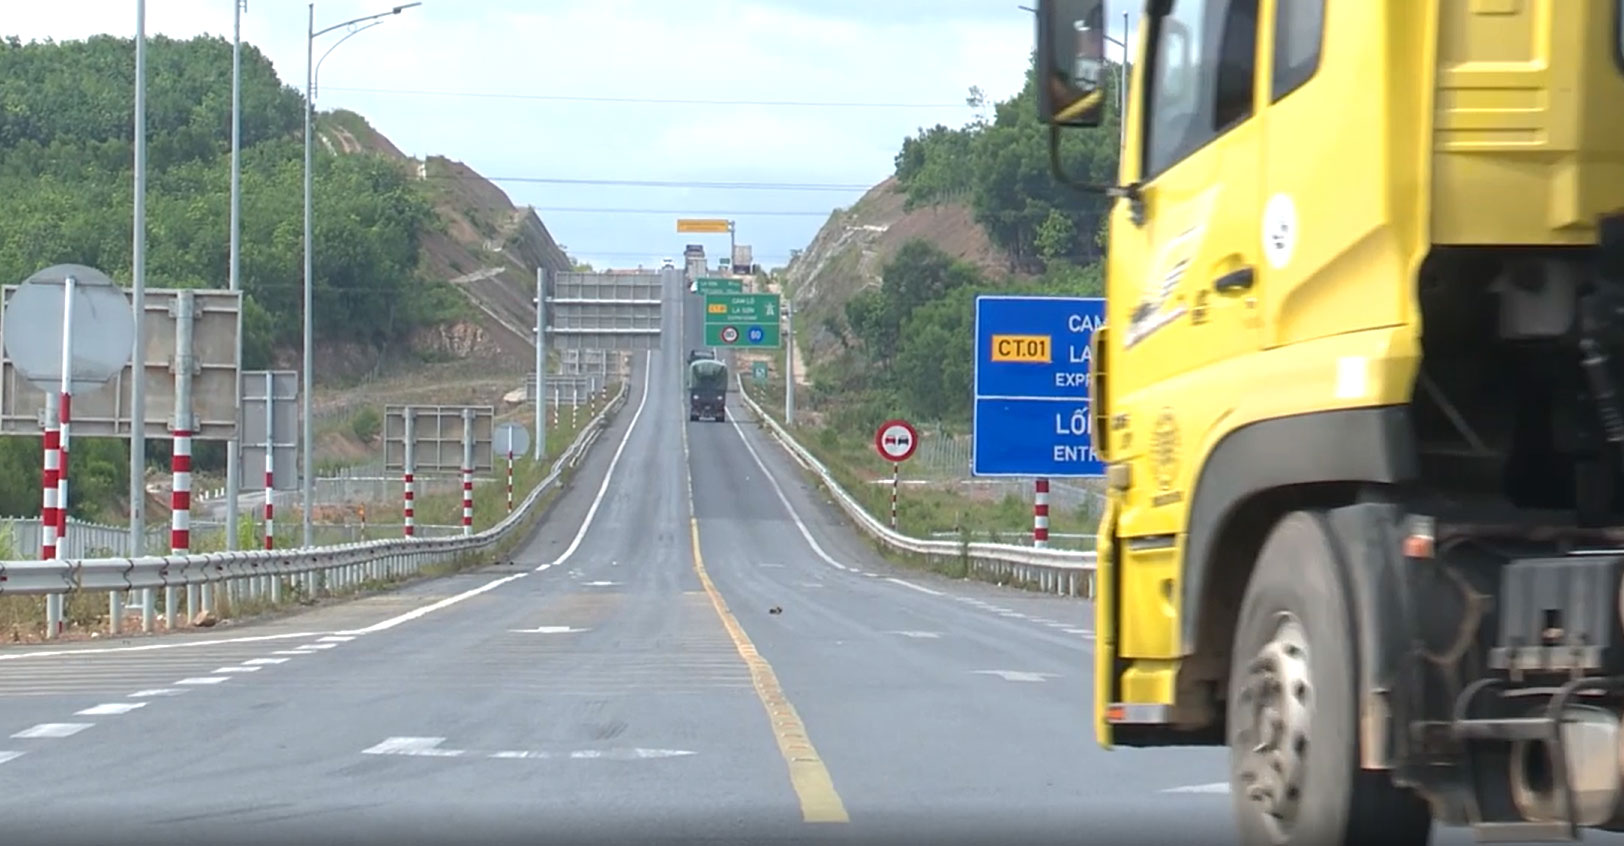 Đường cao tốc ở Việt Nam được phân thành mấy cấp?